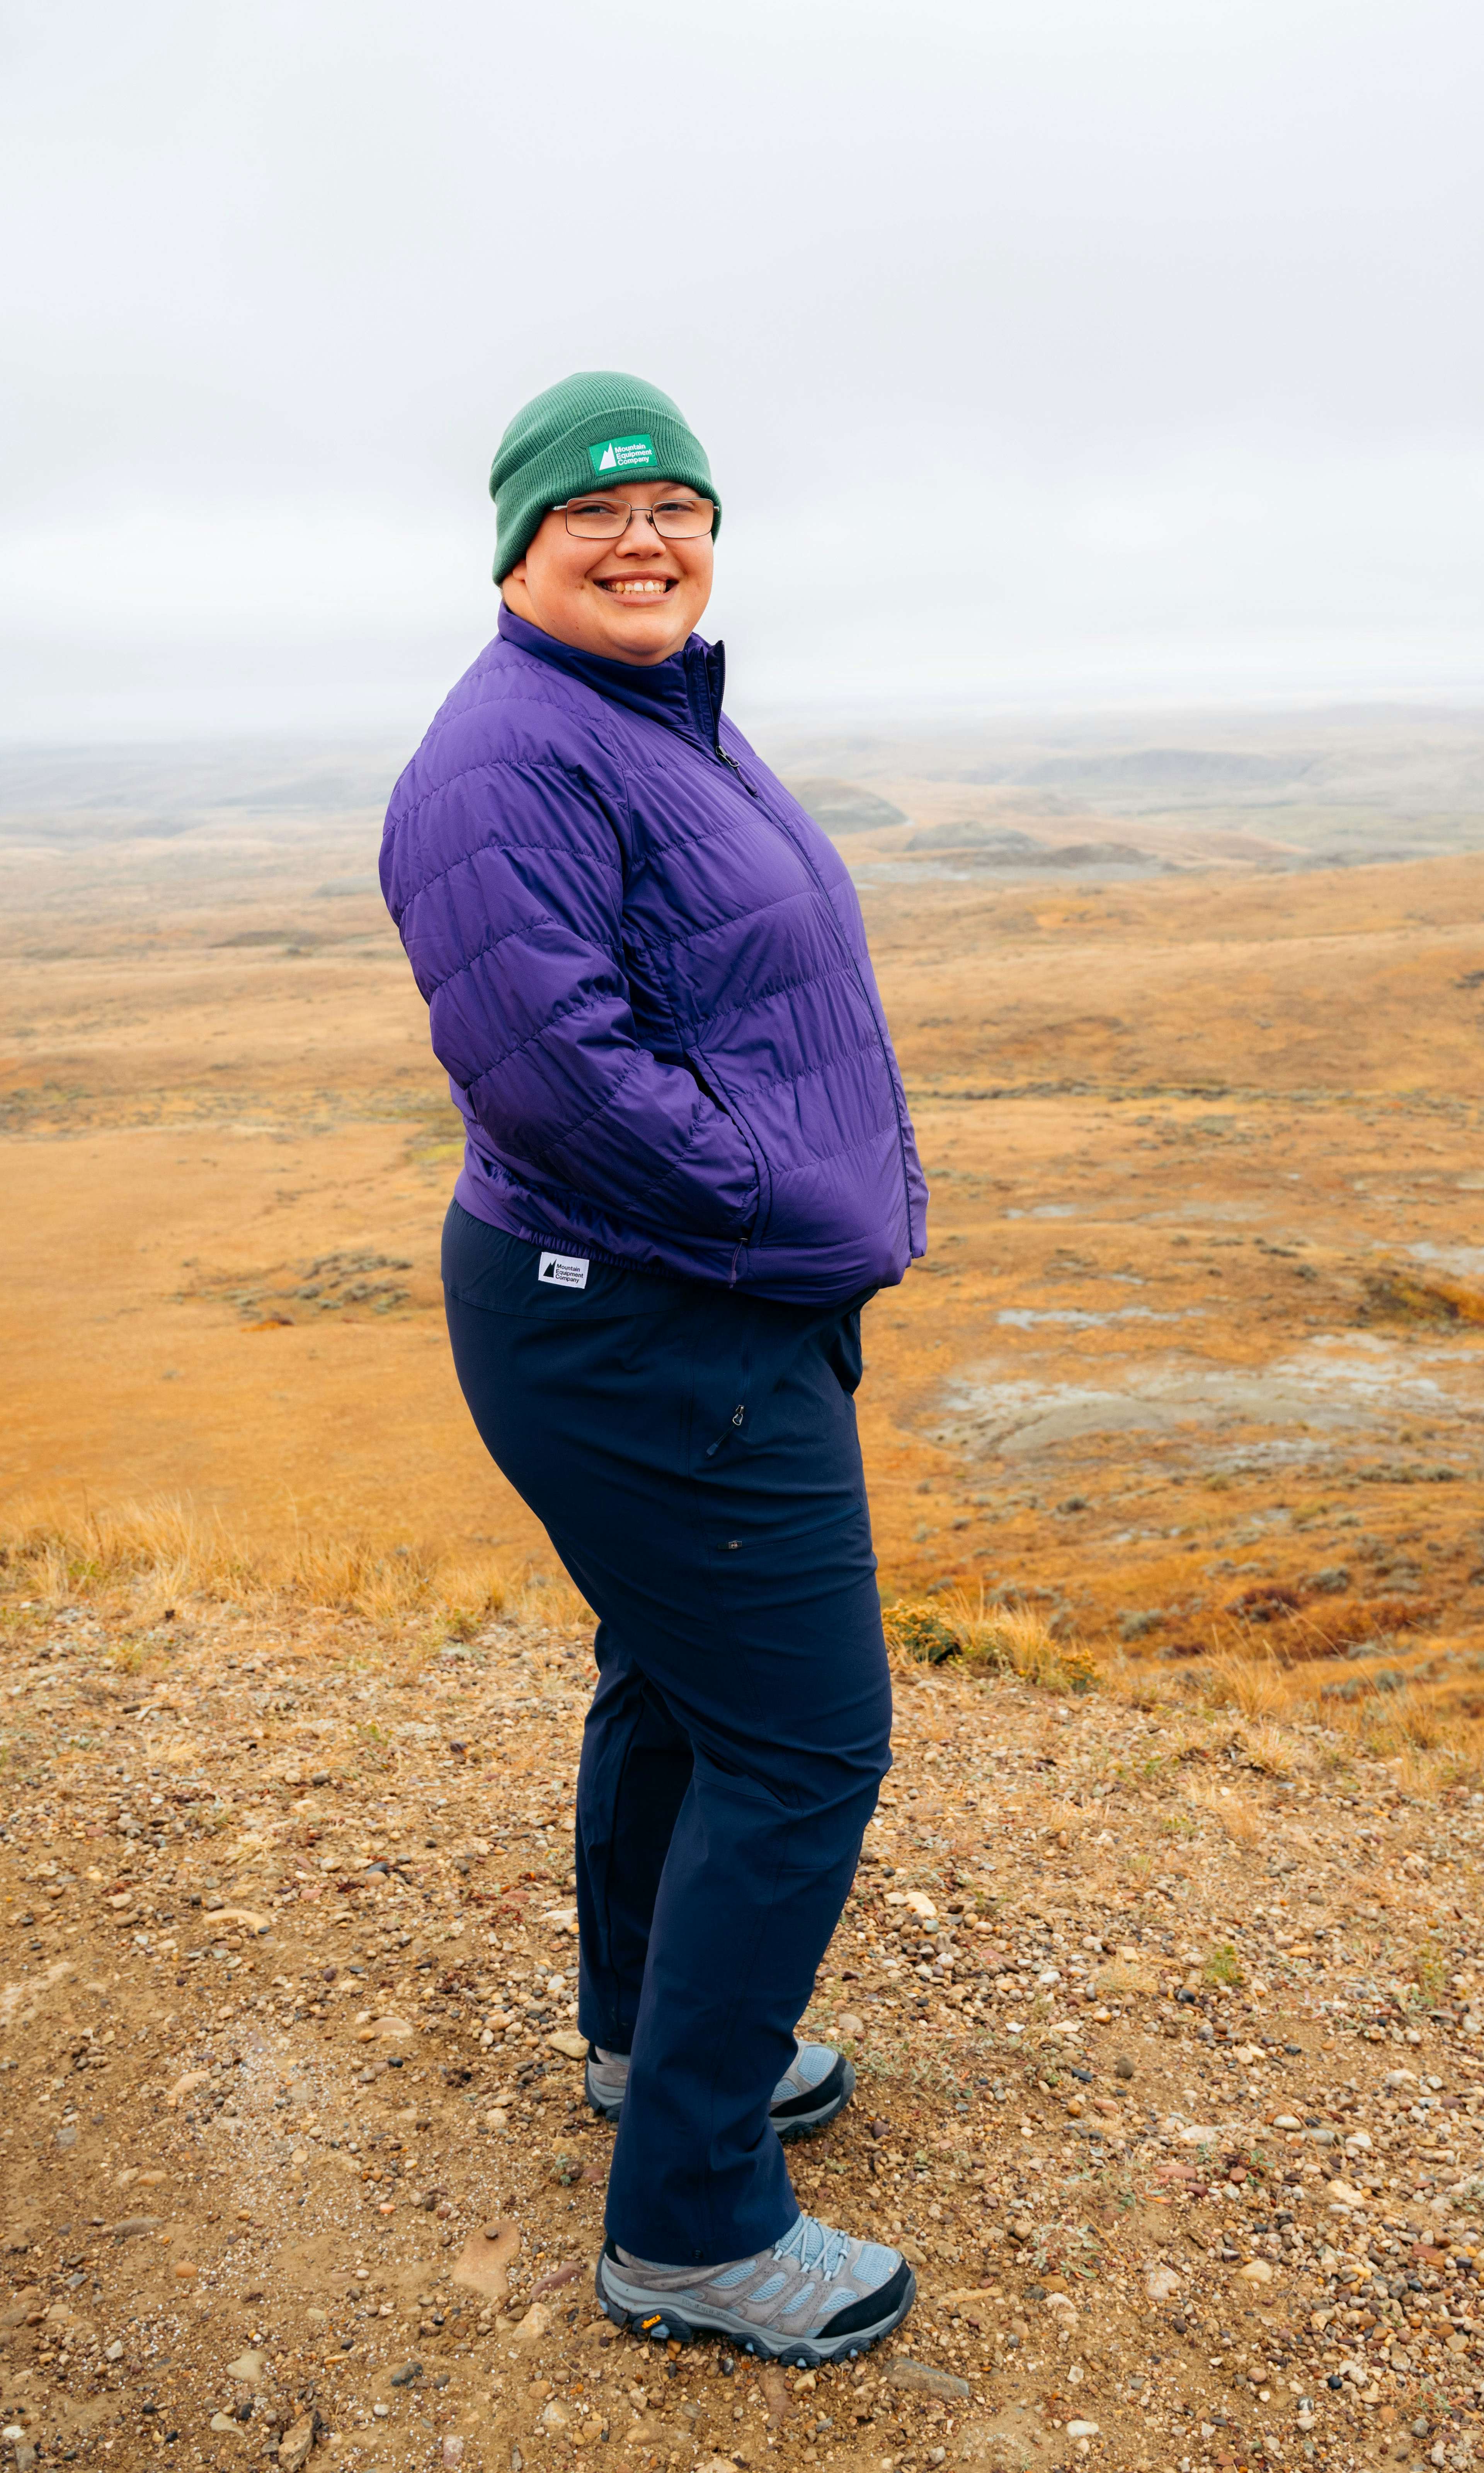 Rebecca, au Parc national des Prairies, portant la tuque édition Classiques de MEC en vert, le manteau Uplink de MEC et le pantalon Borderland de MEC en noir.